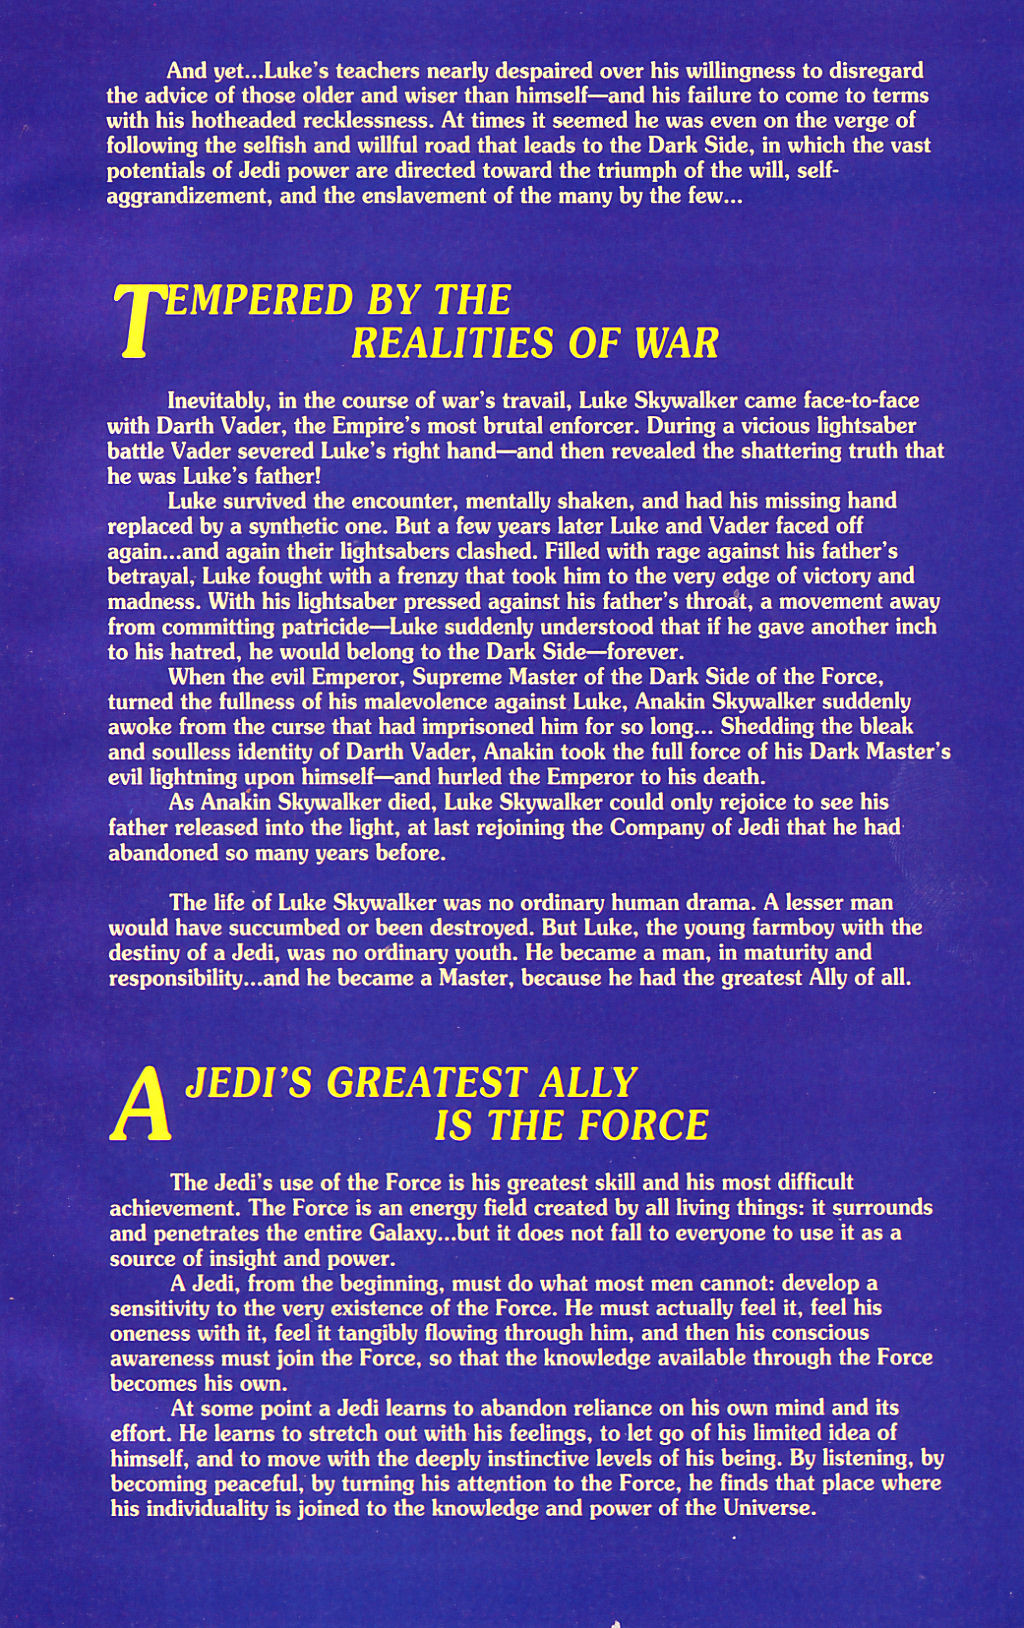 Read online Star Wars: Dark Empire comic -  Issue #1 - 29